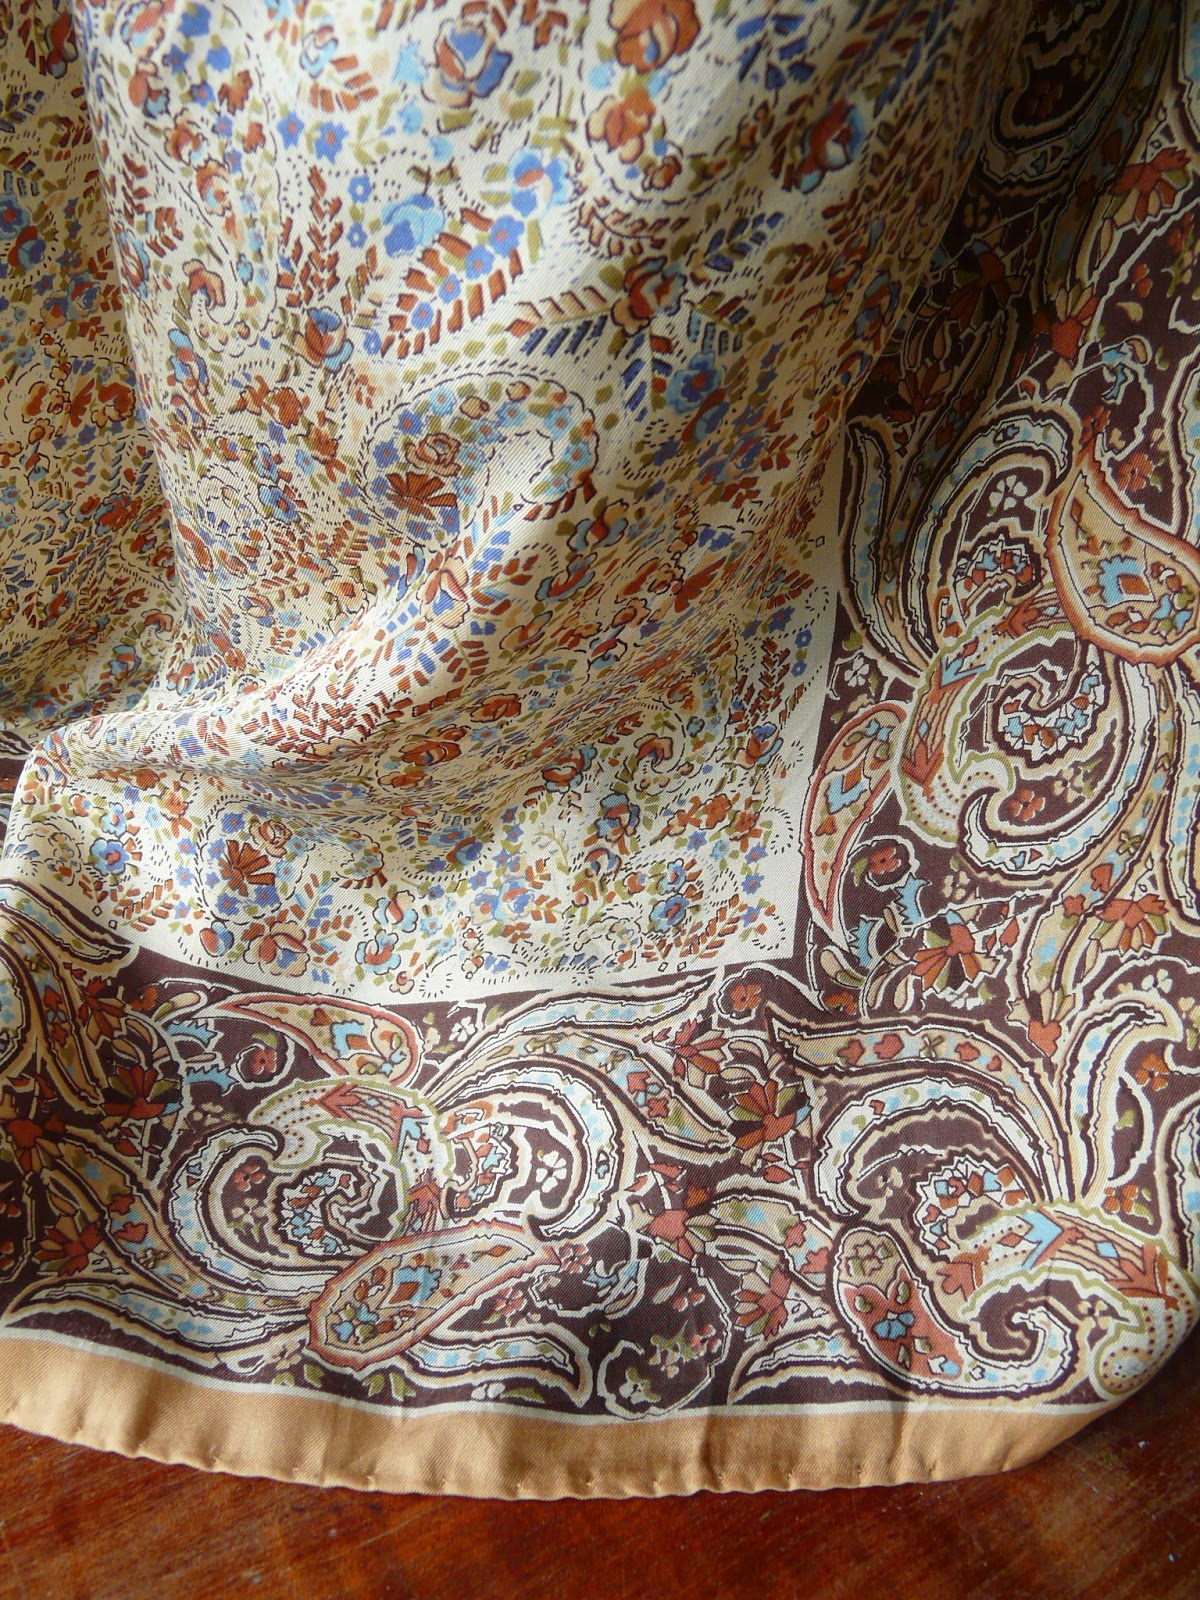 Regency sewing - it was tidy for 10 minutes.: Regency shawl dress ...